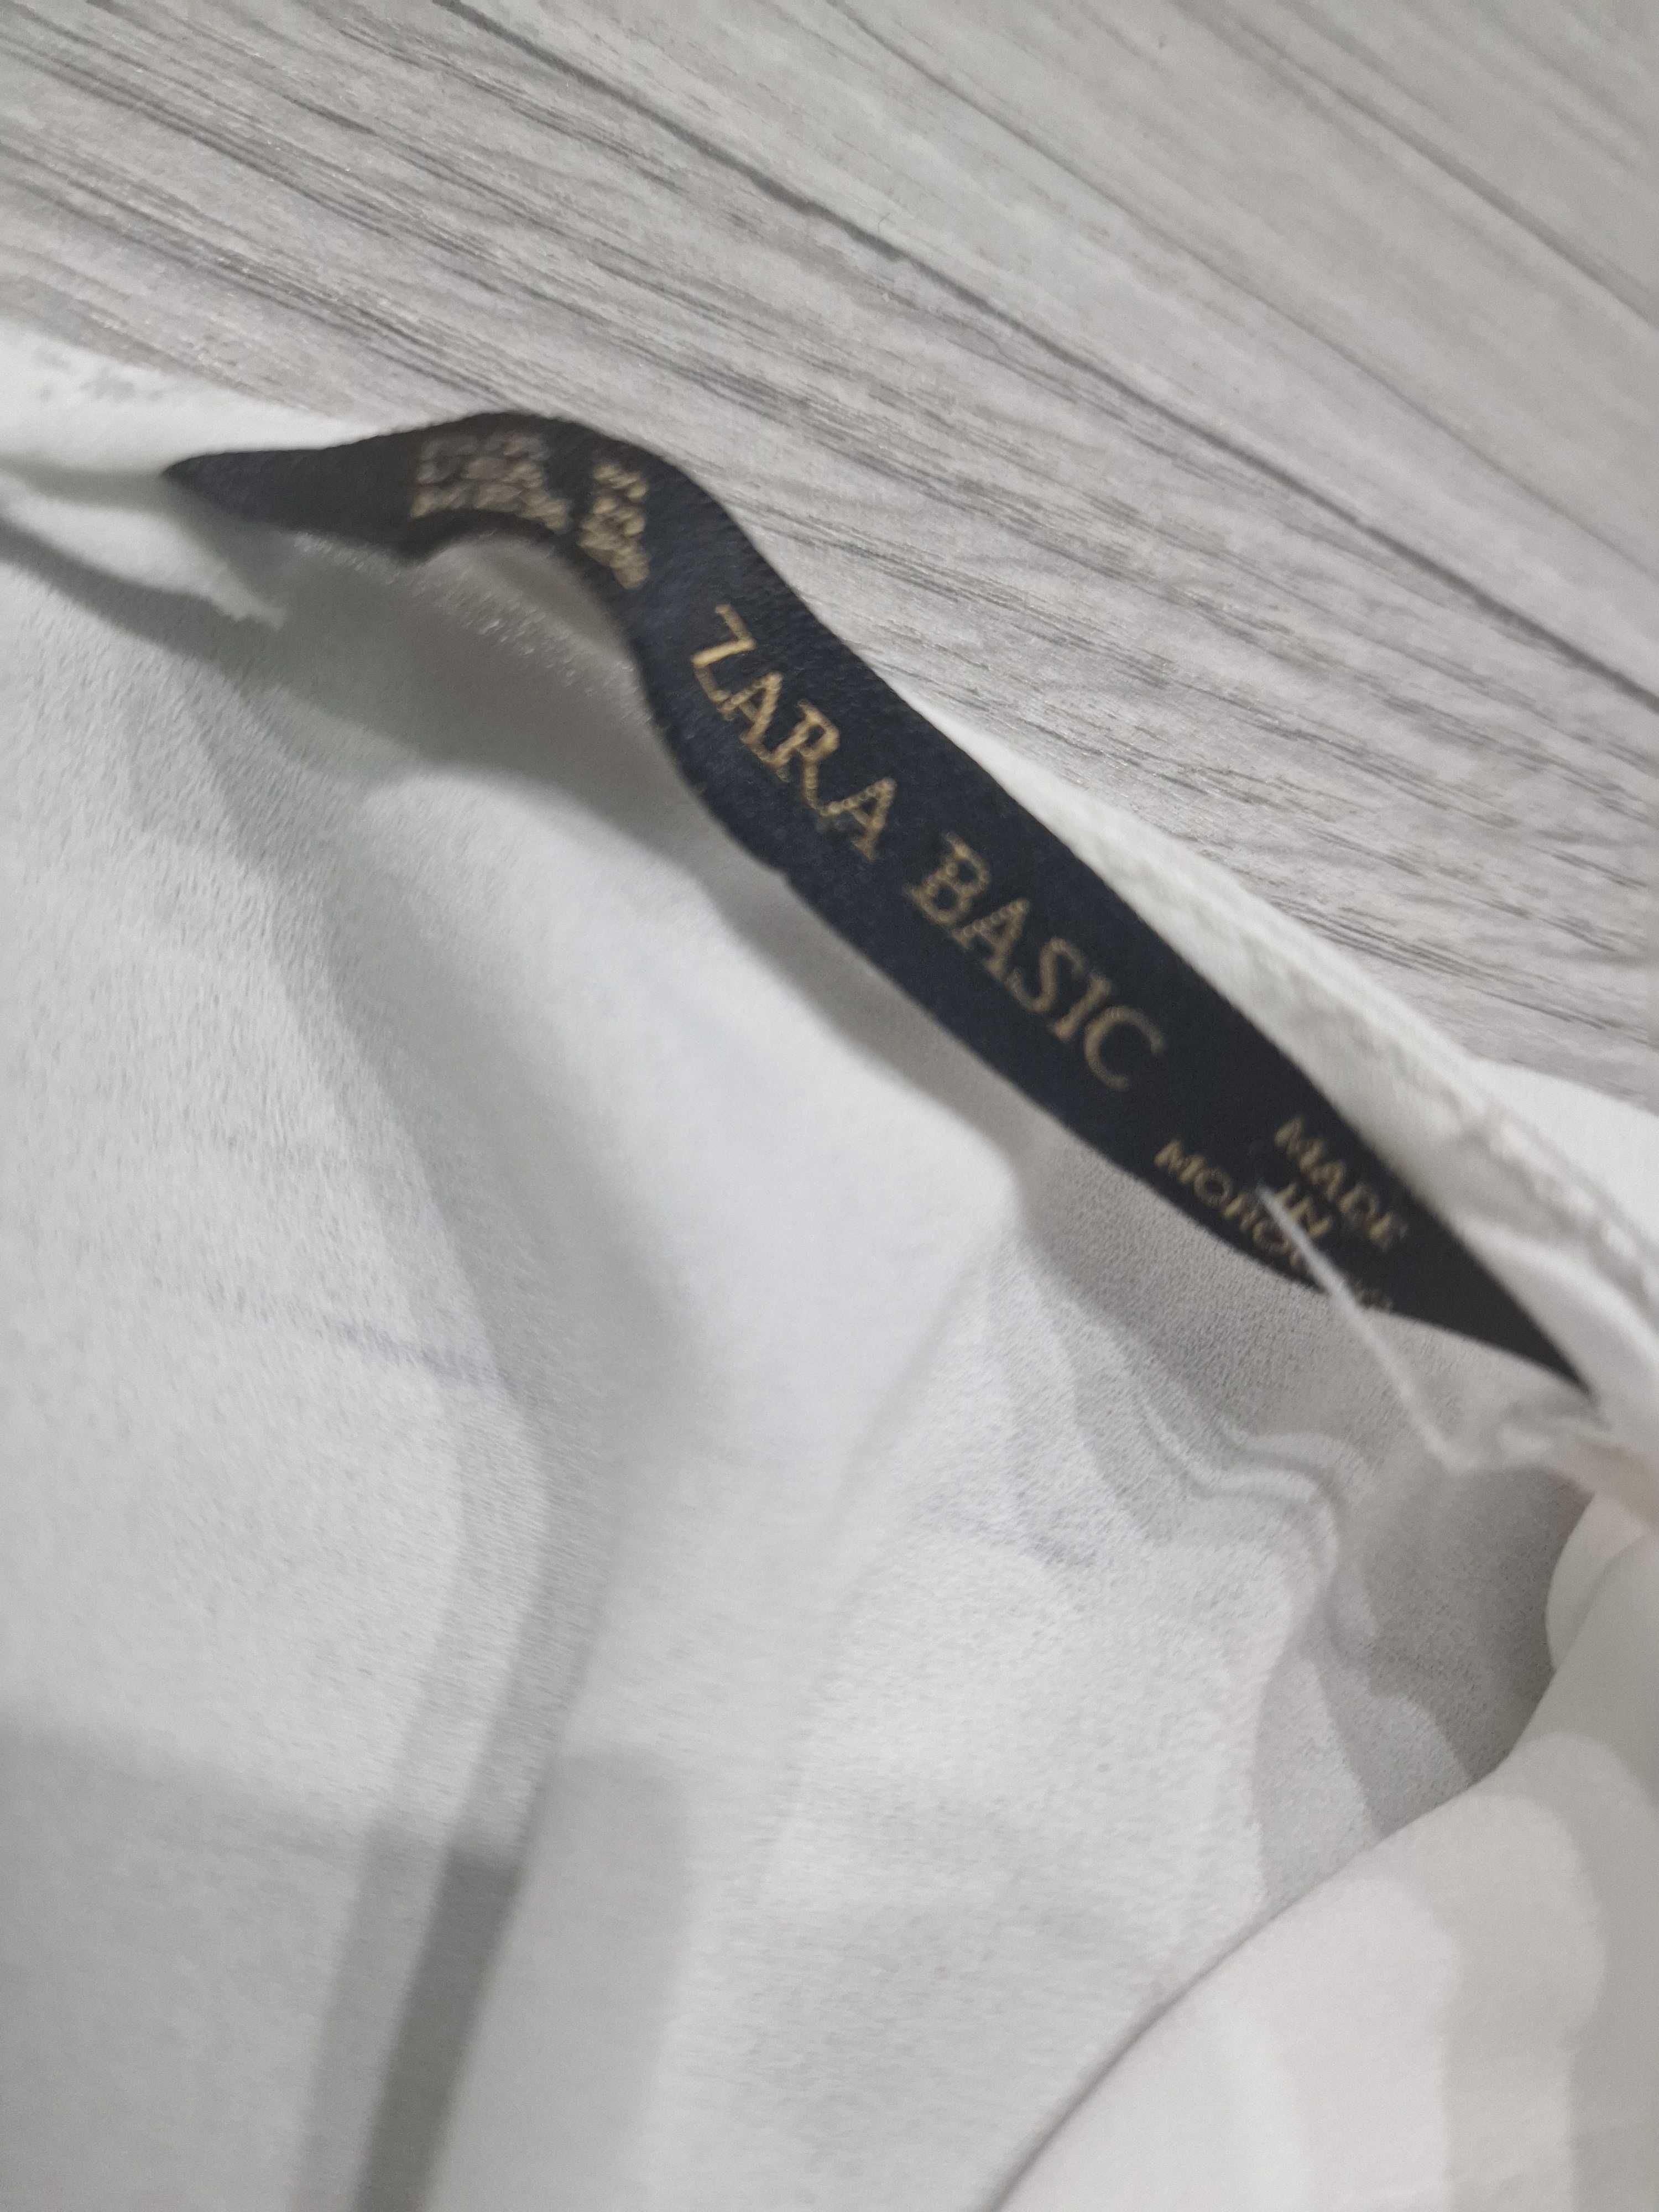 Elegancka biała bluzka Zara zakończenie roku, ozdobne rękawy